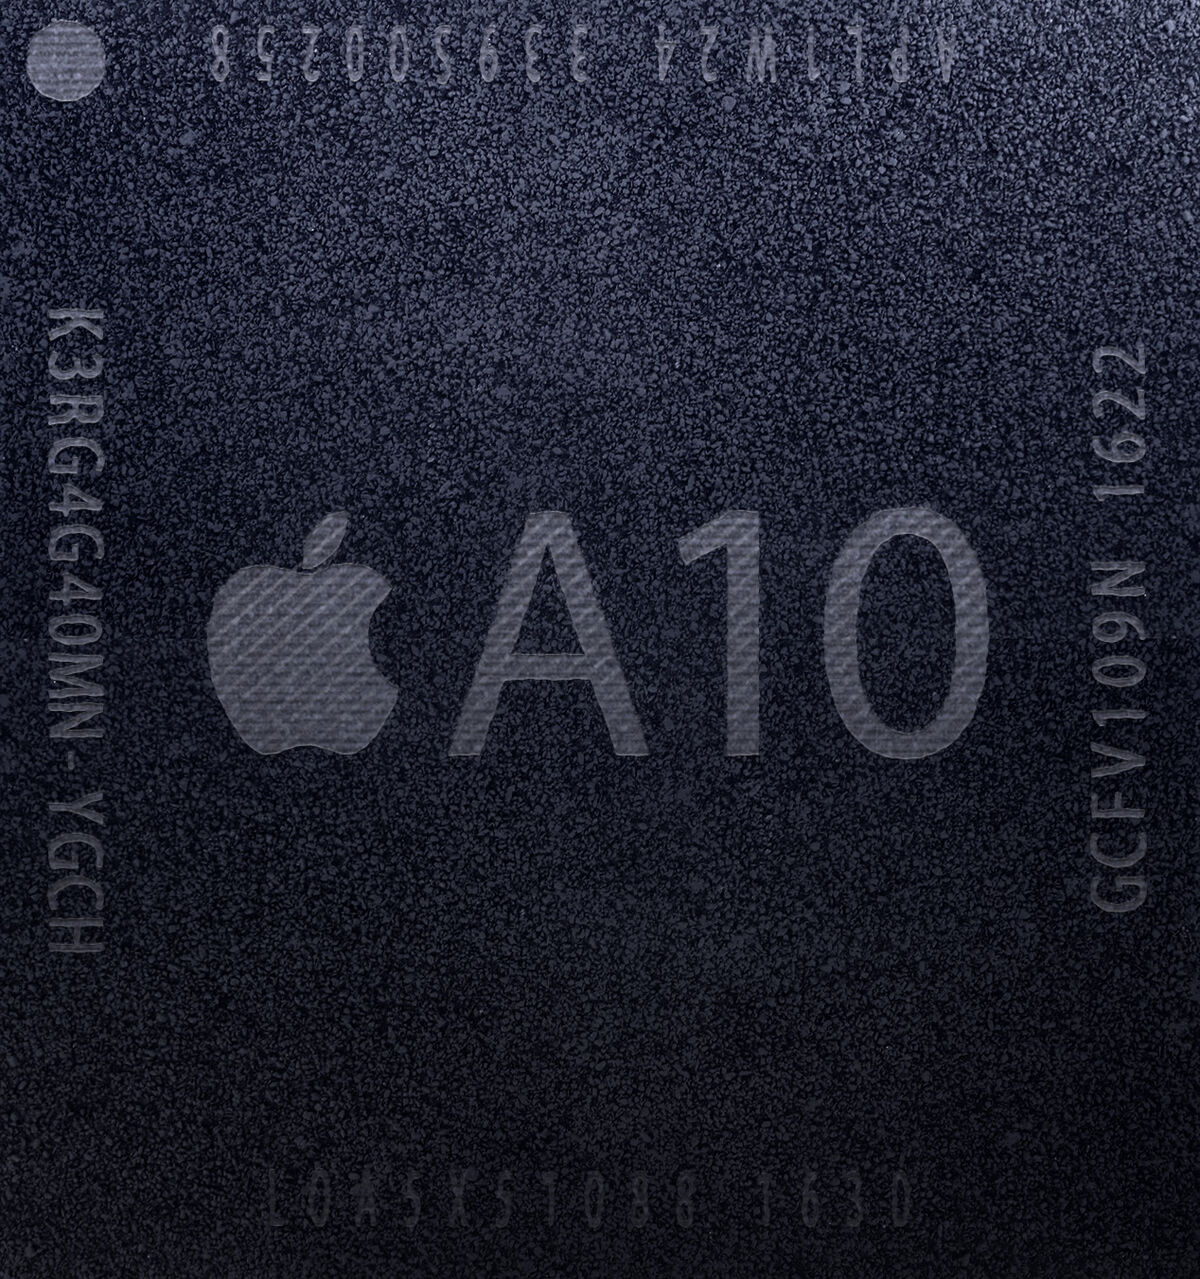 Apple A10 | Apple Wiki | Fandom